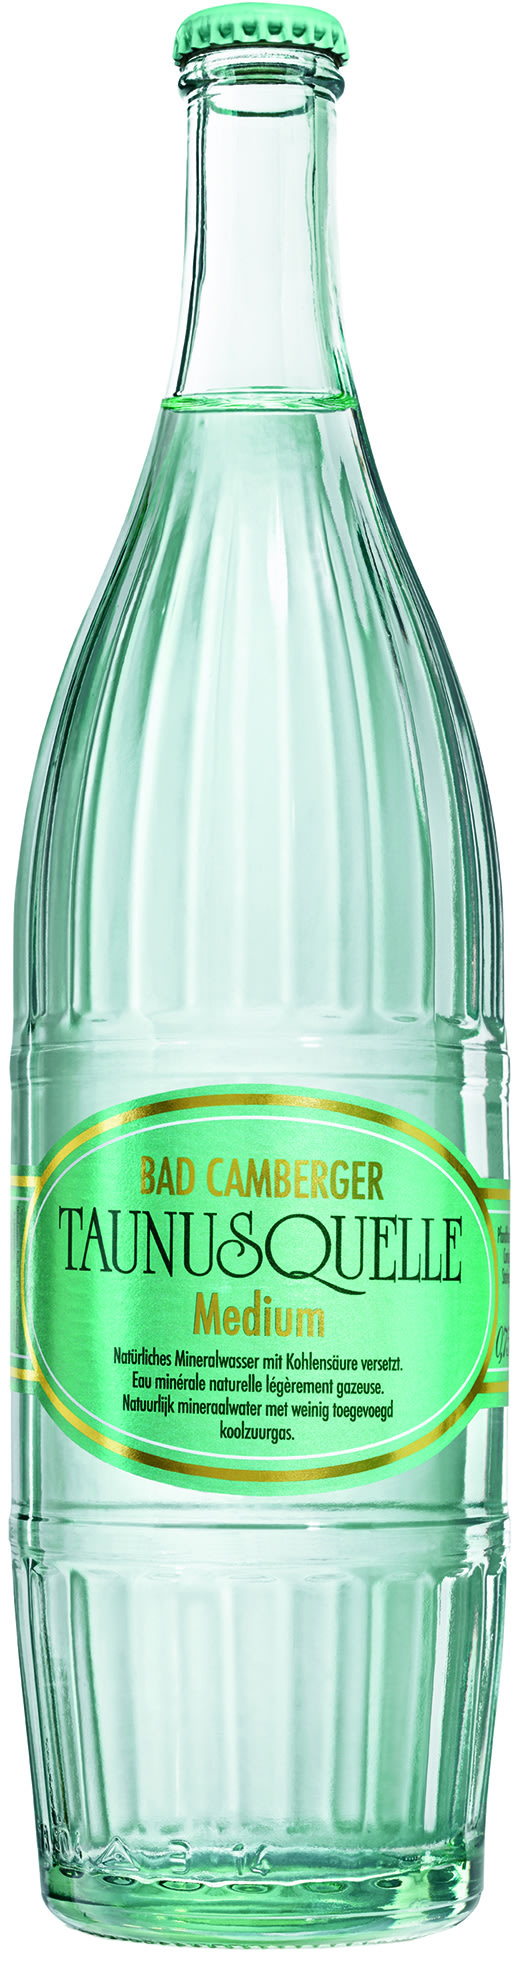 Bad Camberger Taunusquelle Mineralwasser Medium Kasten 12 x 0,75 l Glas Mehrweg